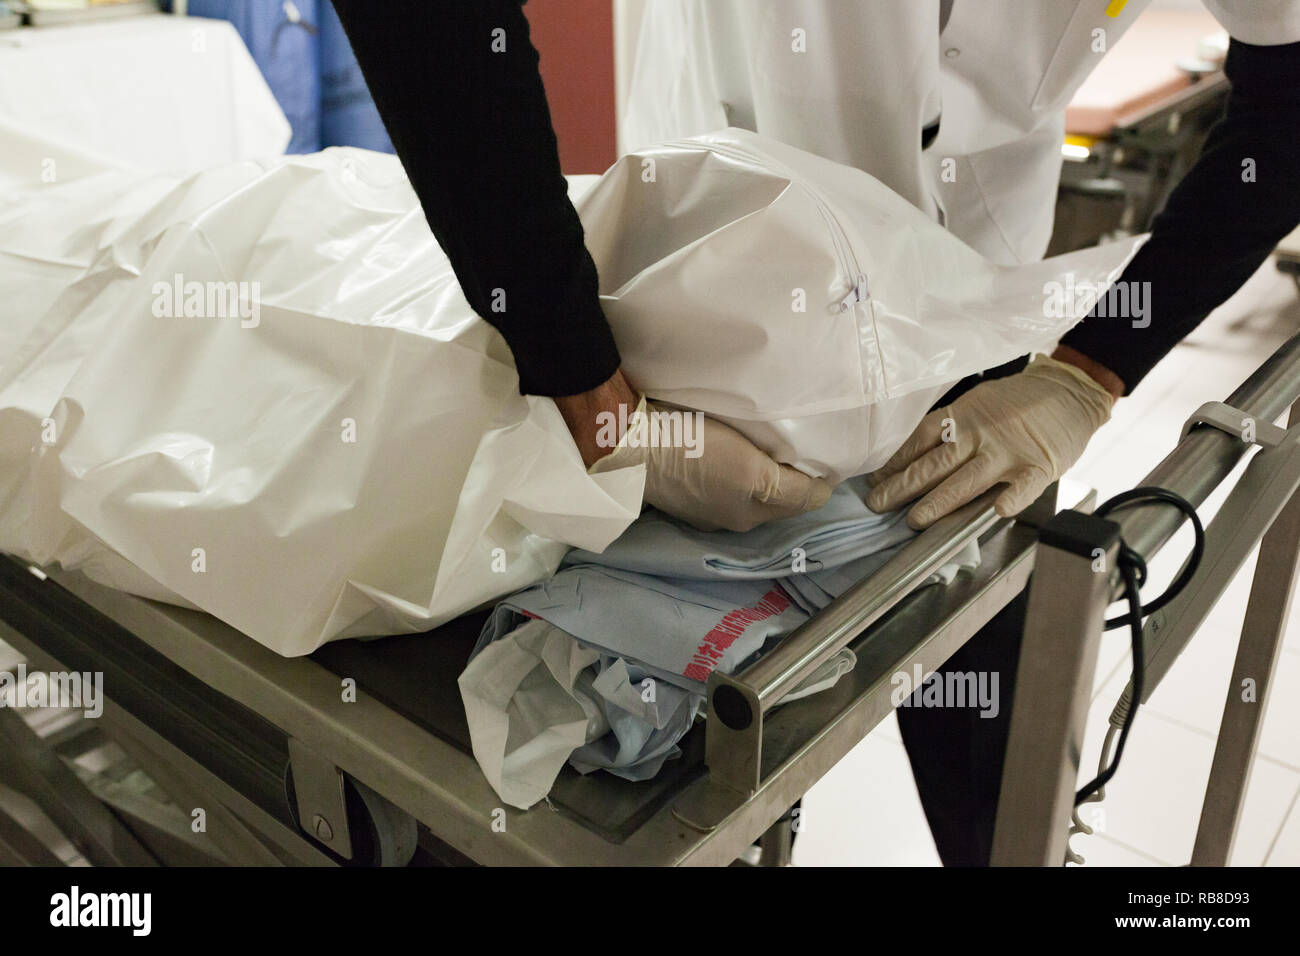 Un cuerpo muerto (cadáver) es recién llegado a la cámara funeraria en un hospital. Foto de stock